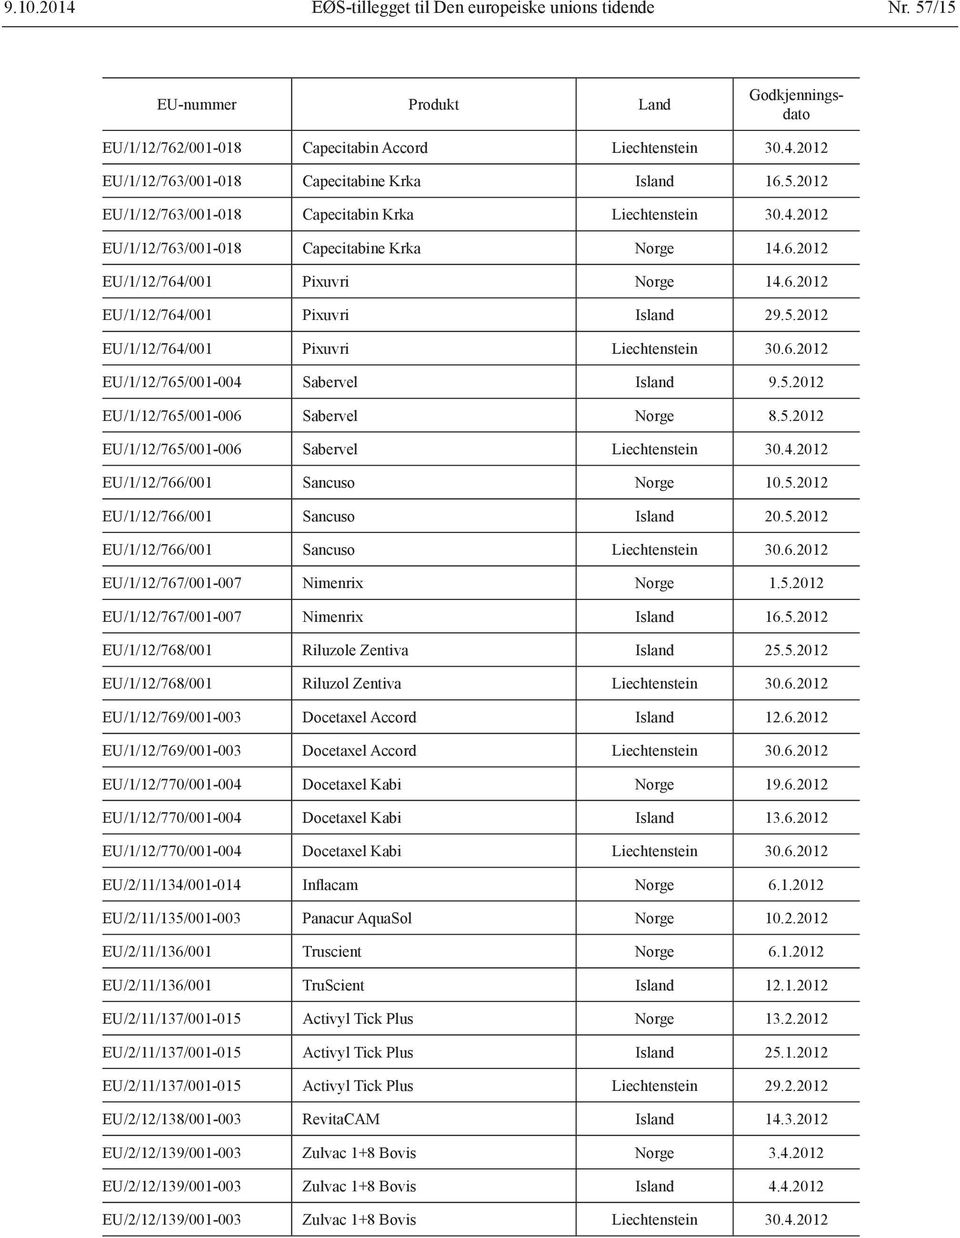 5.2012 EU/1/12/765/001-006 Sabervel Norge 8.5.2012 EU/1/12/765/001-006 Sabervel Liechtenstein 30.4.2012 EU/1/12/766/001 Sancuso Norge 10.5.2012 EU/1/12/766/001 Sancuso Island 20.5.2012 EU/1/12/766/001 Sancuso Liechtenstein 30.